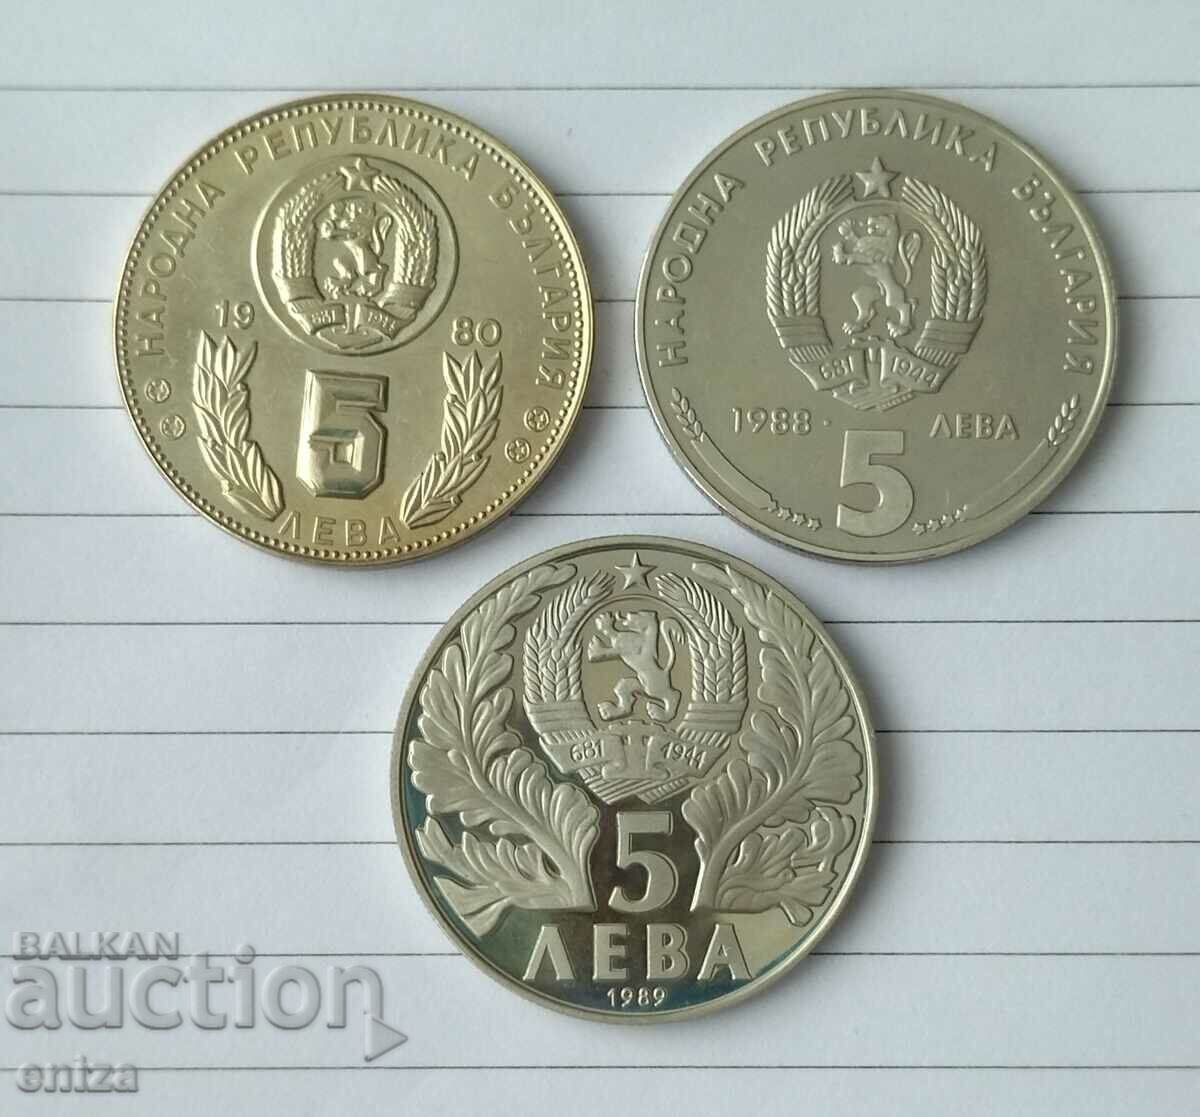 3 соц юбилейни монети по 5 лв